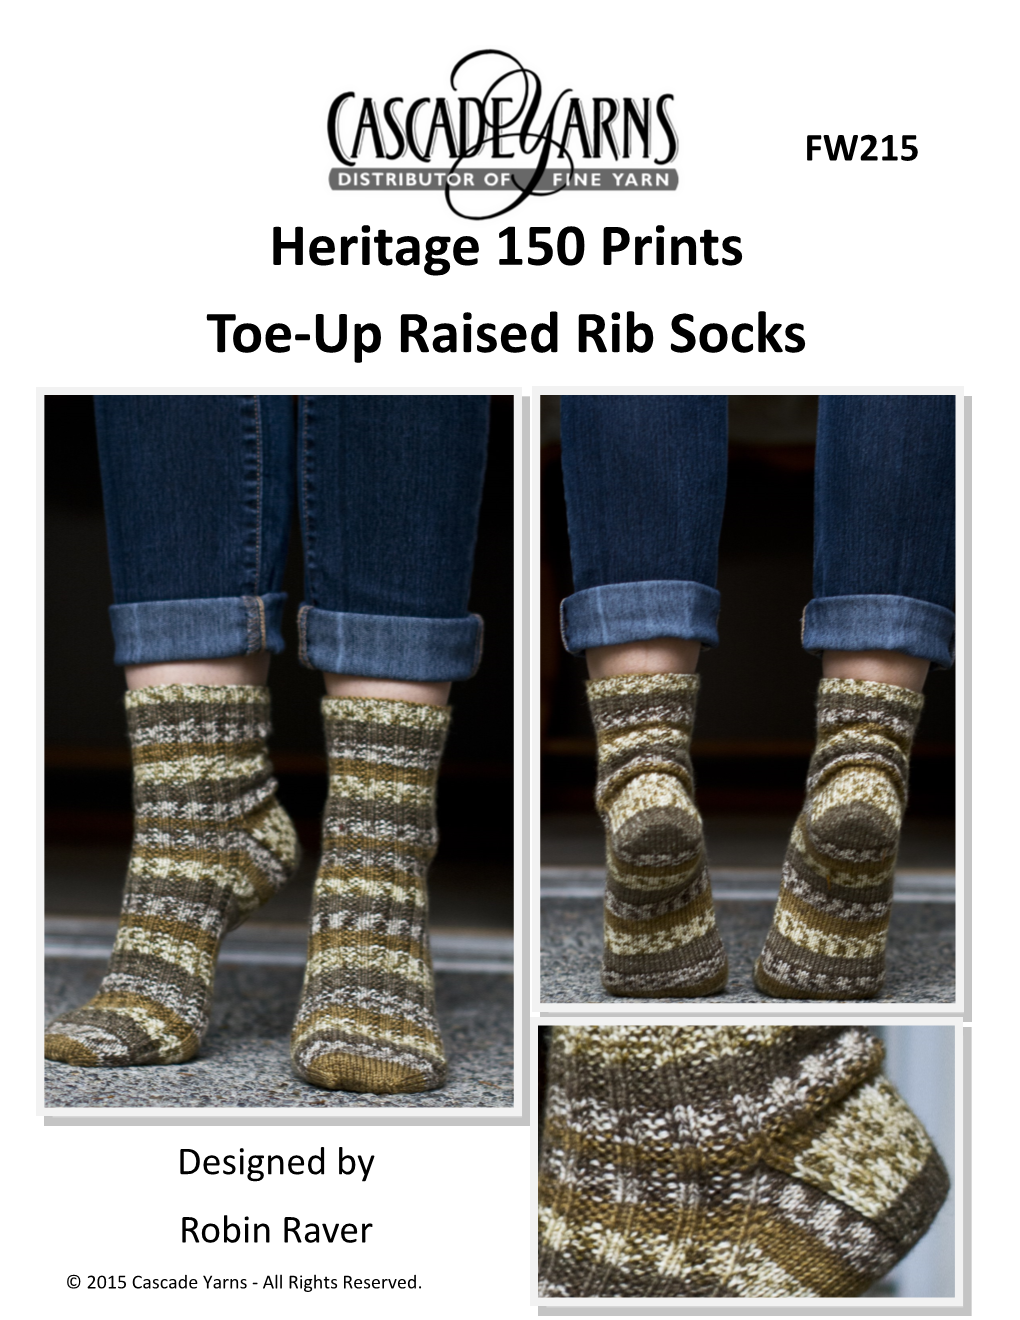 Heritage 150 Prints Toe-Up Raised Rib Socks